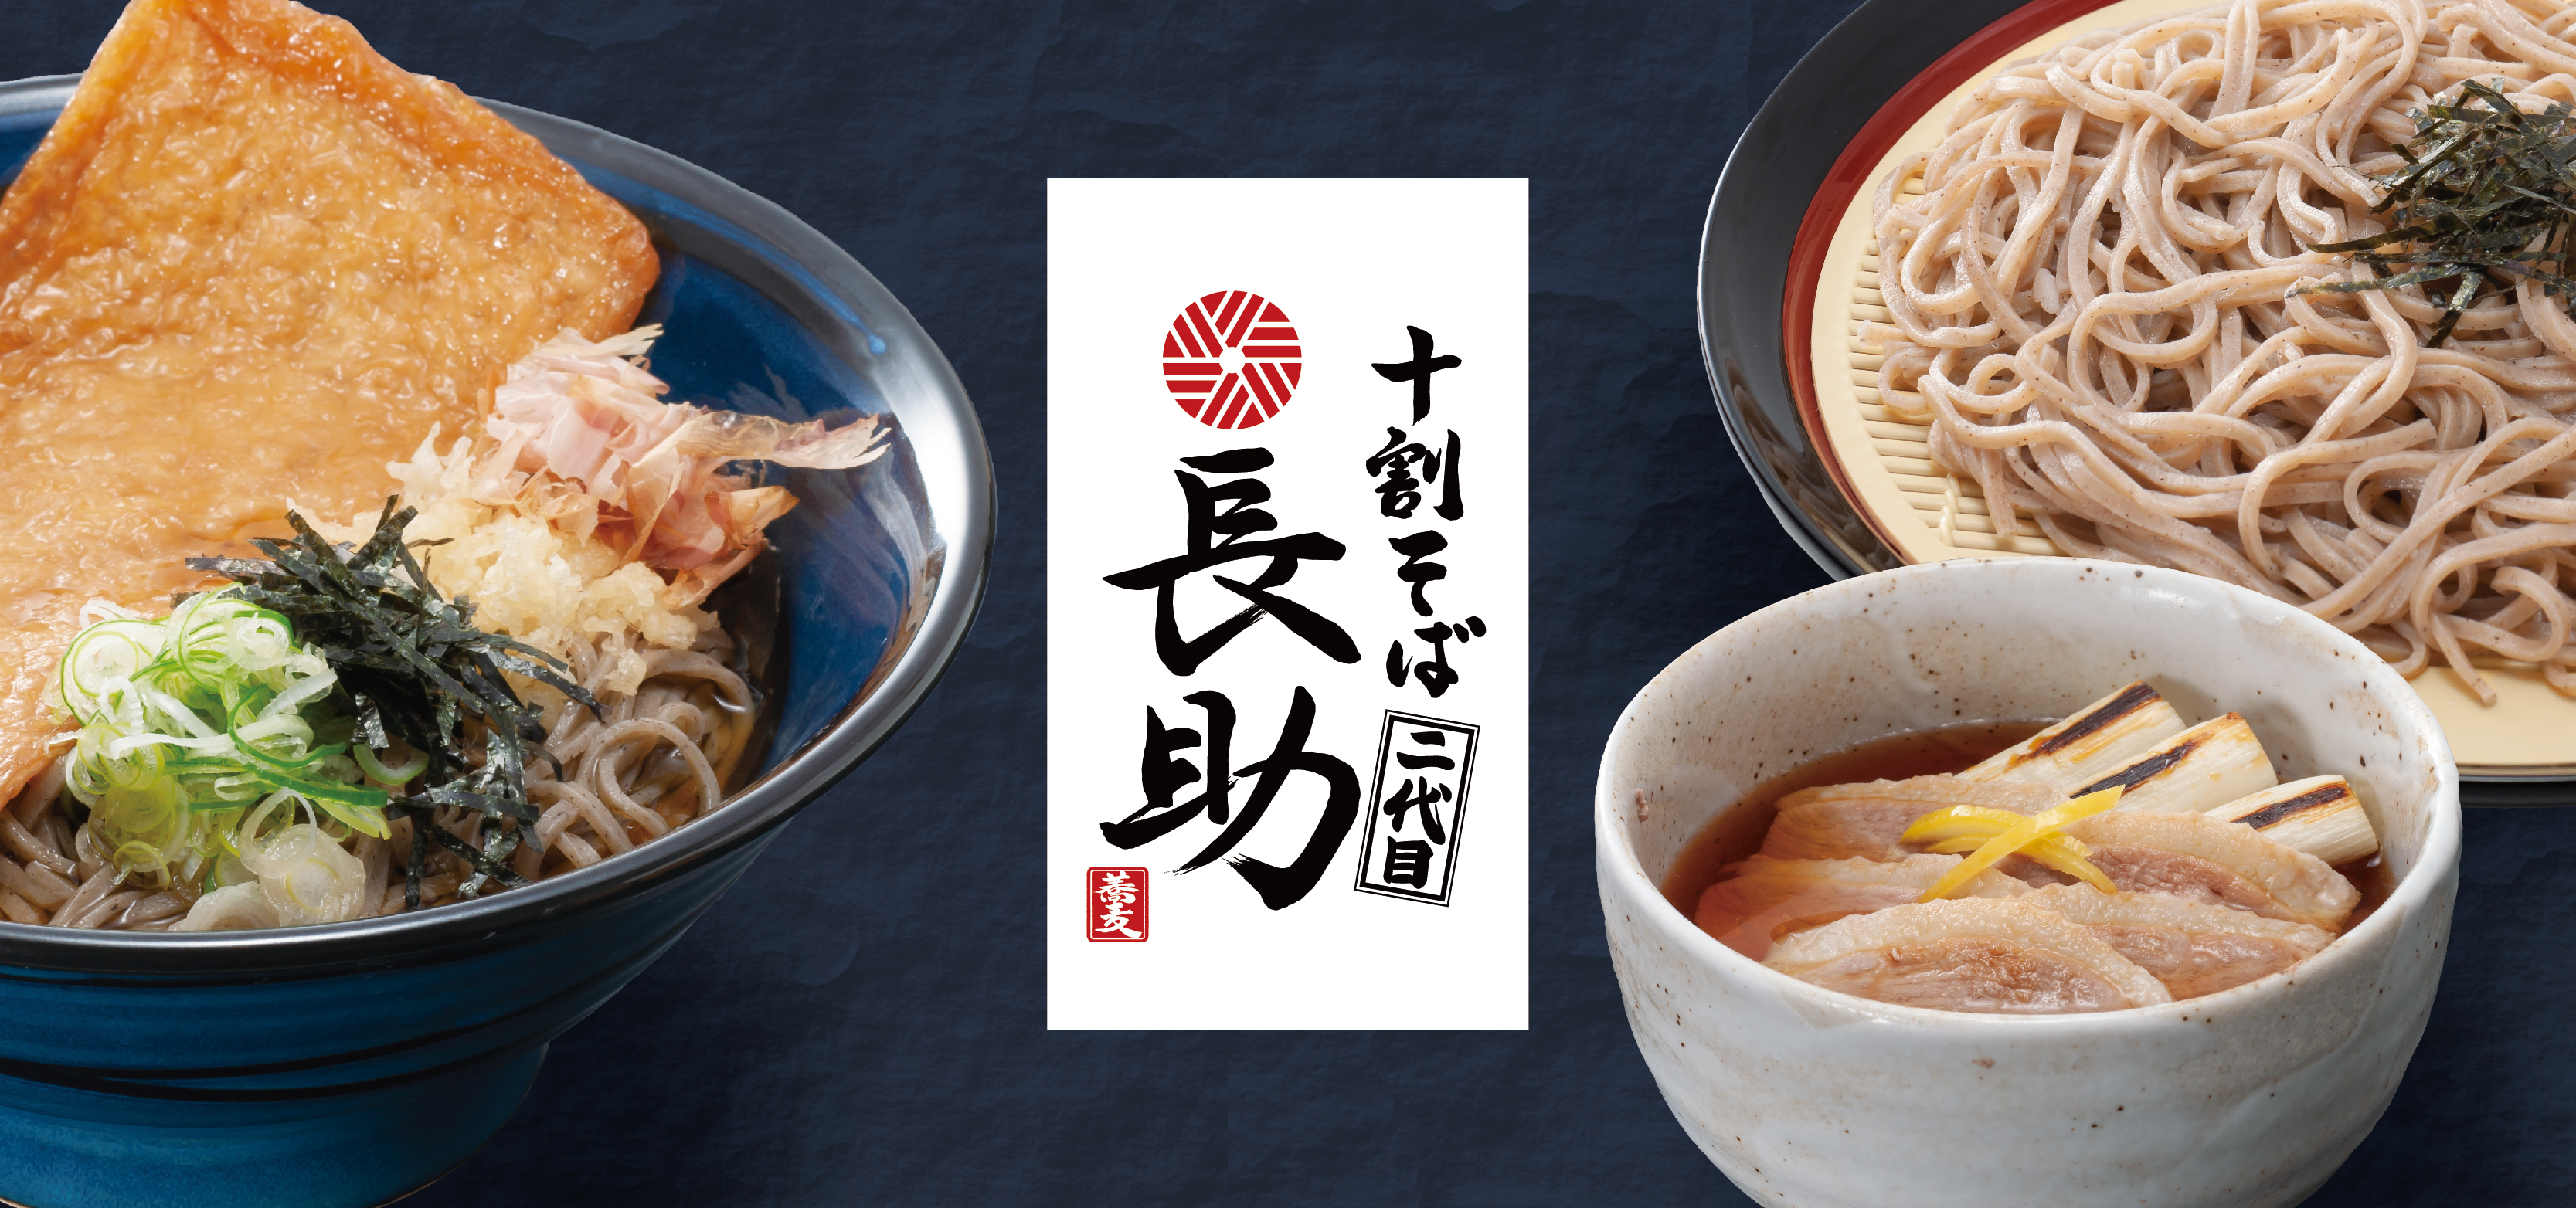 お知らせ 和食麺処サガミは和食の原点とも言える蕎麦 みそ煮込 和食を主体とした店舗を東海地区に展開